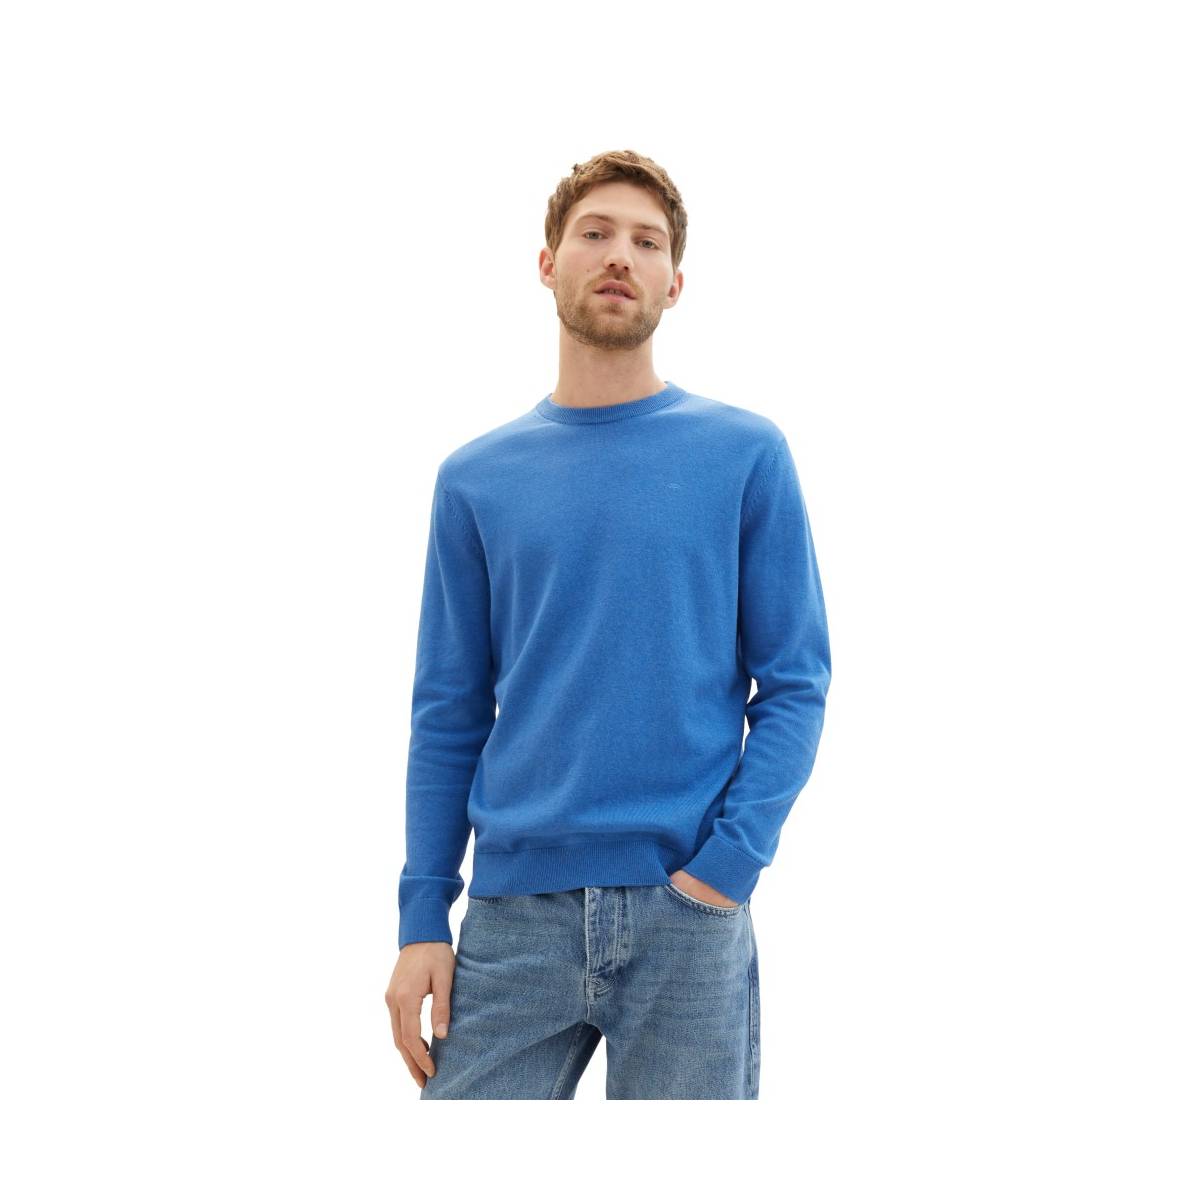 TOM TAILOR  tricot pull's en gilets cobalt -  model 1039810 - Herenkleding tricot pull's en gilets blauw